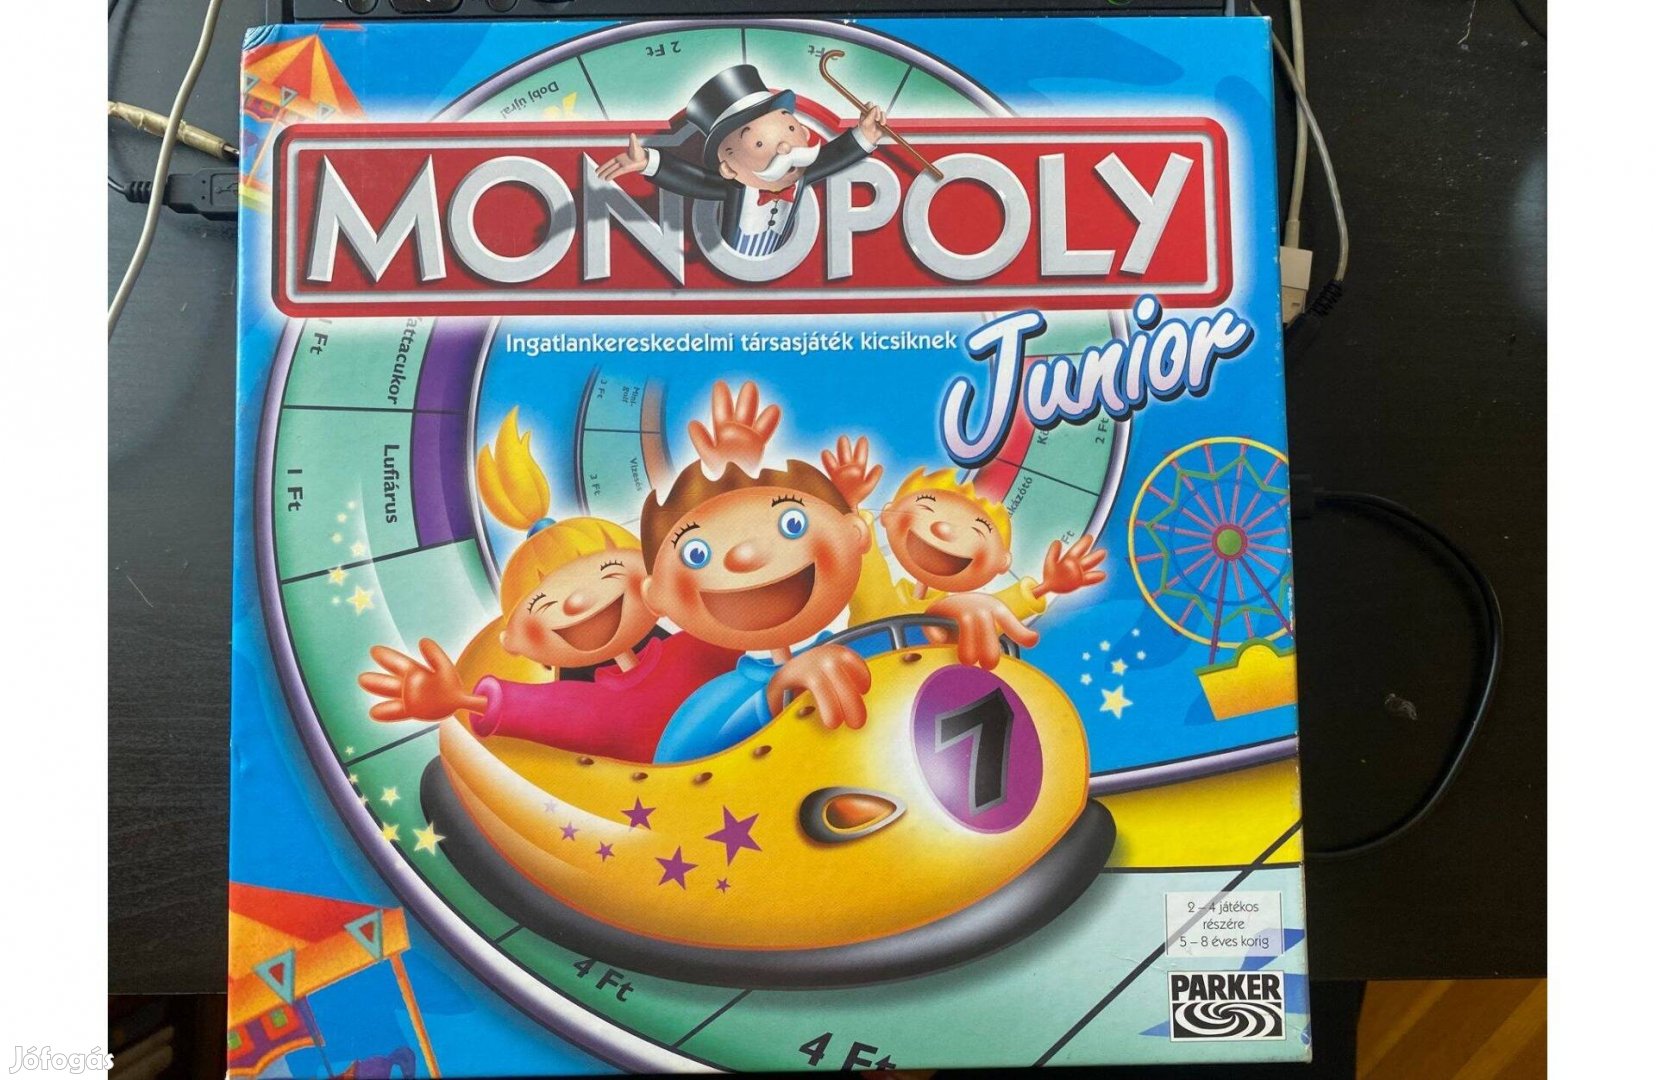 Monopoly Junior Ingatlankereskedelmi társasjáték kicsiknek eladó